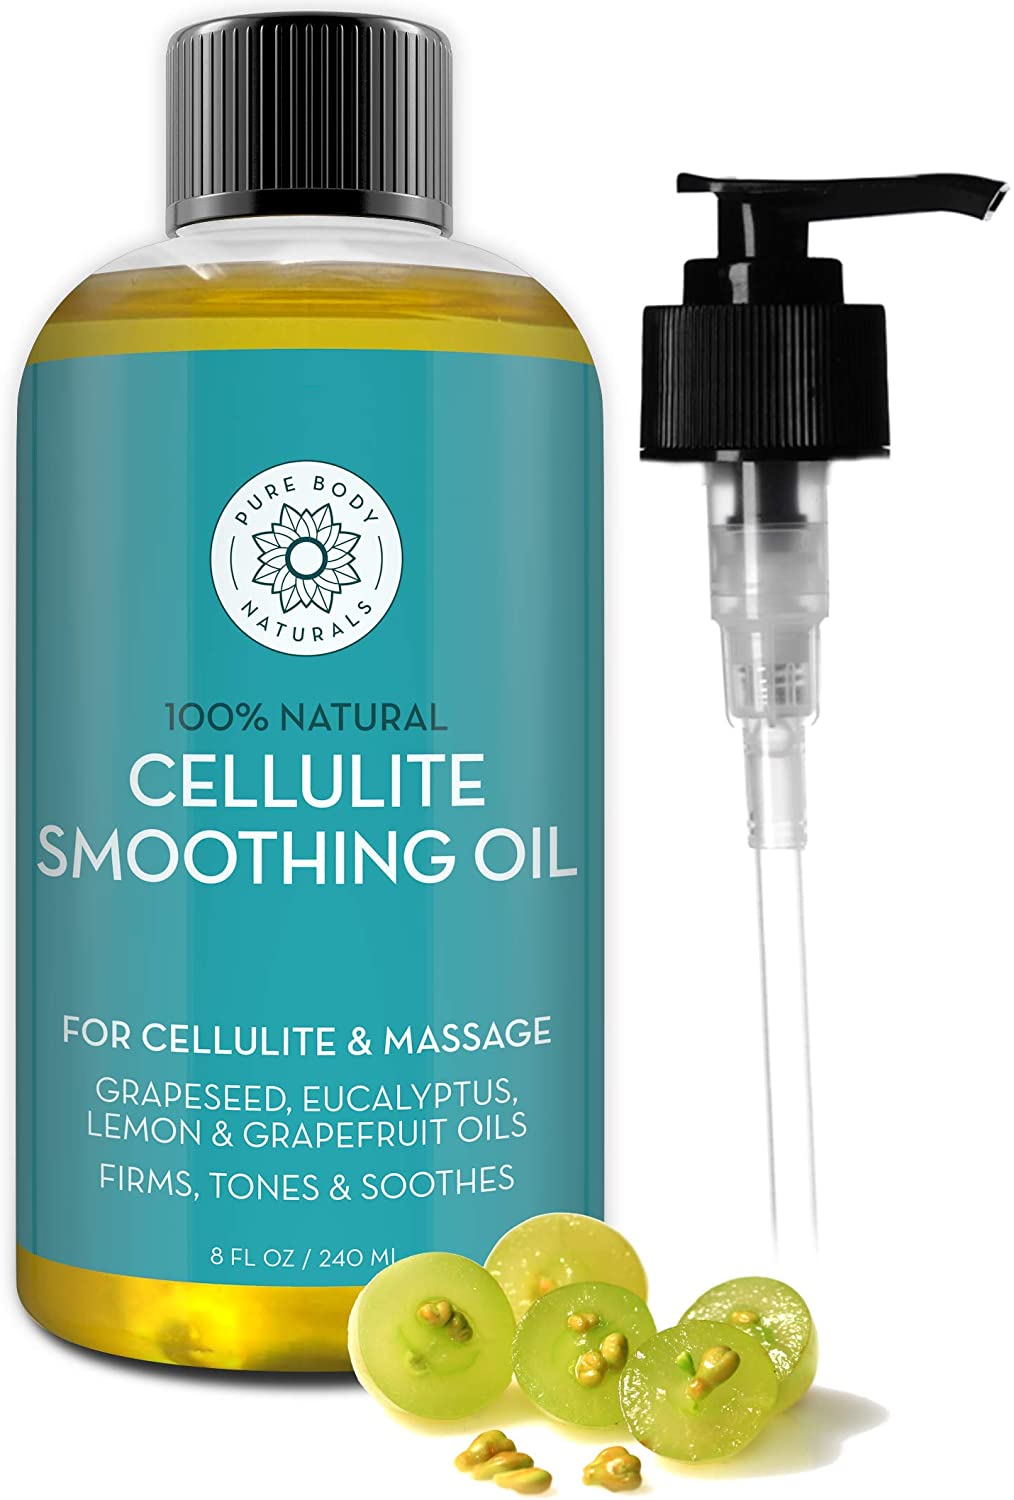 Pure Body Naturals Cellulite Massage Oil